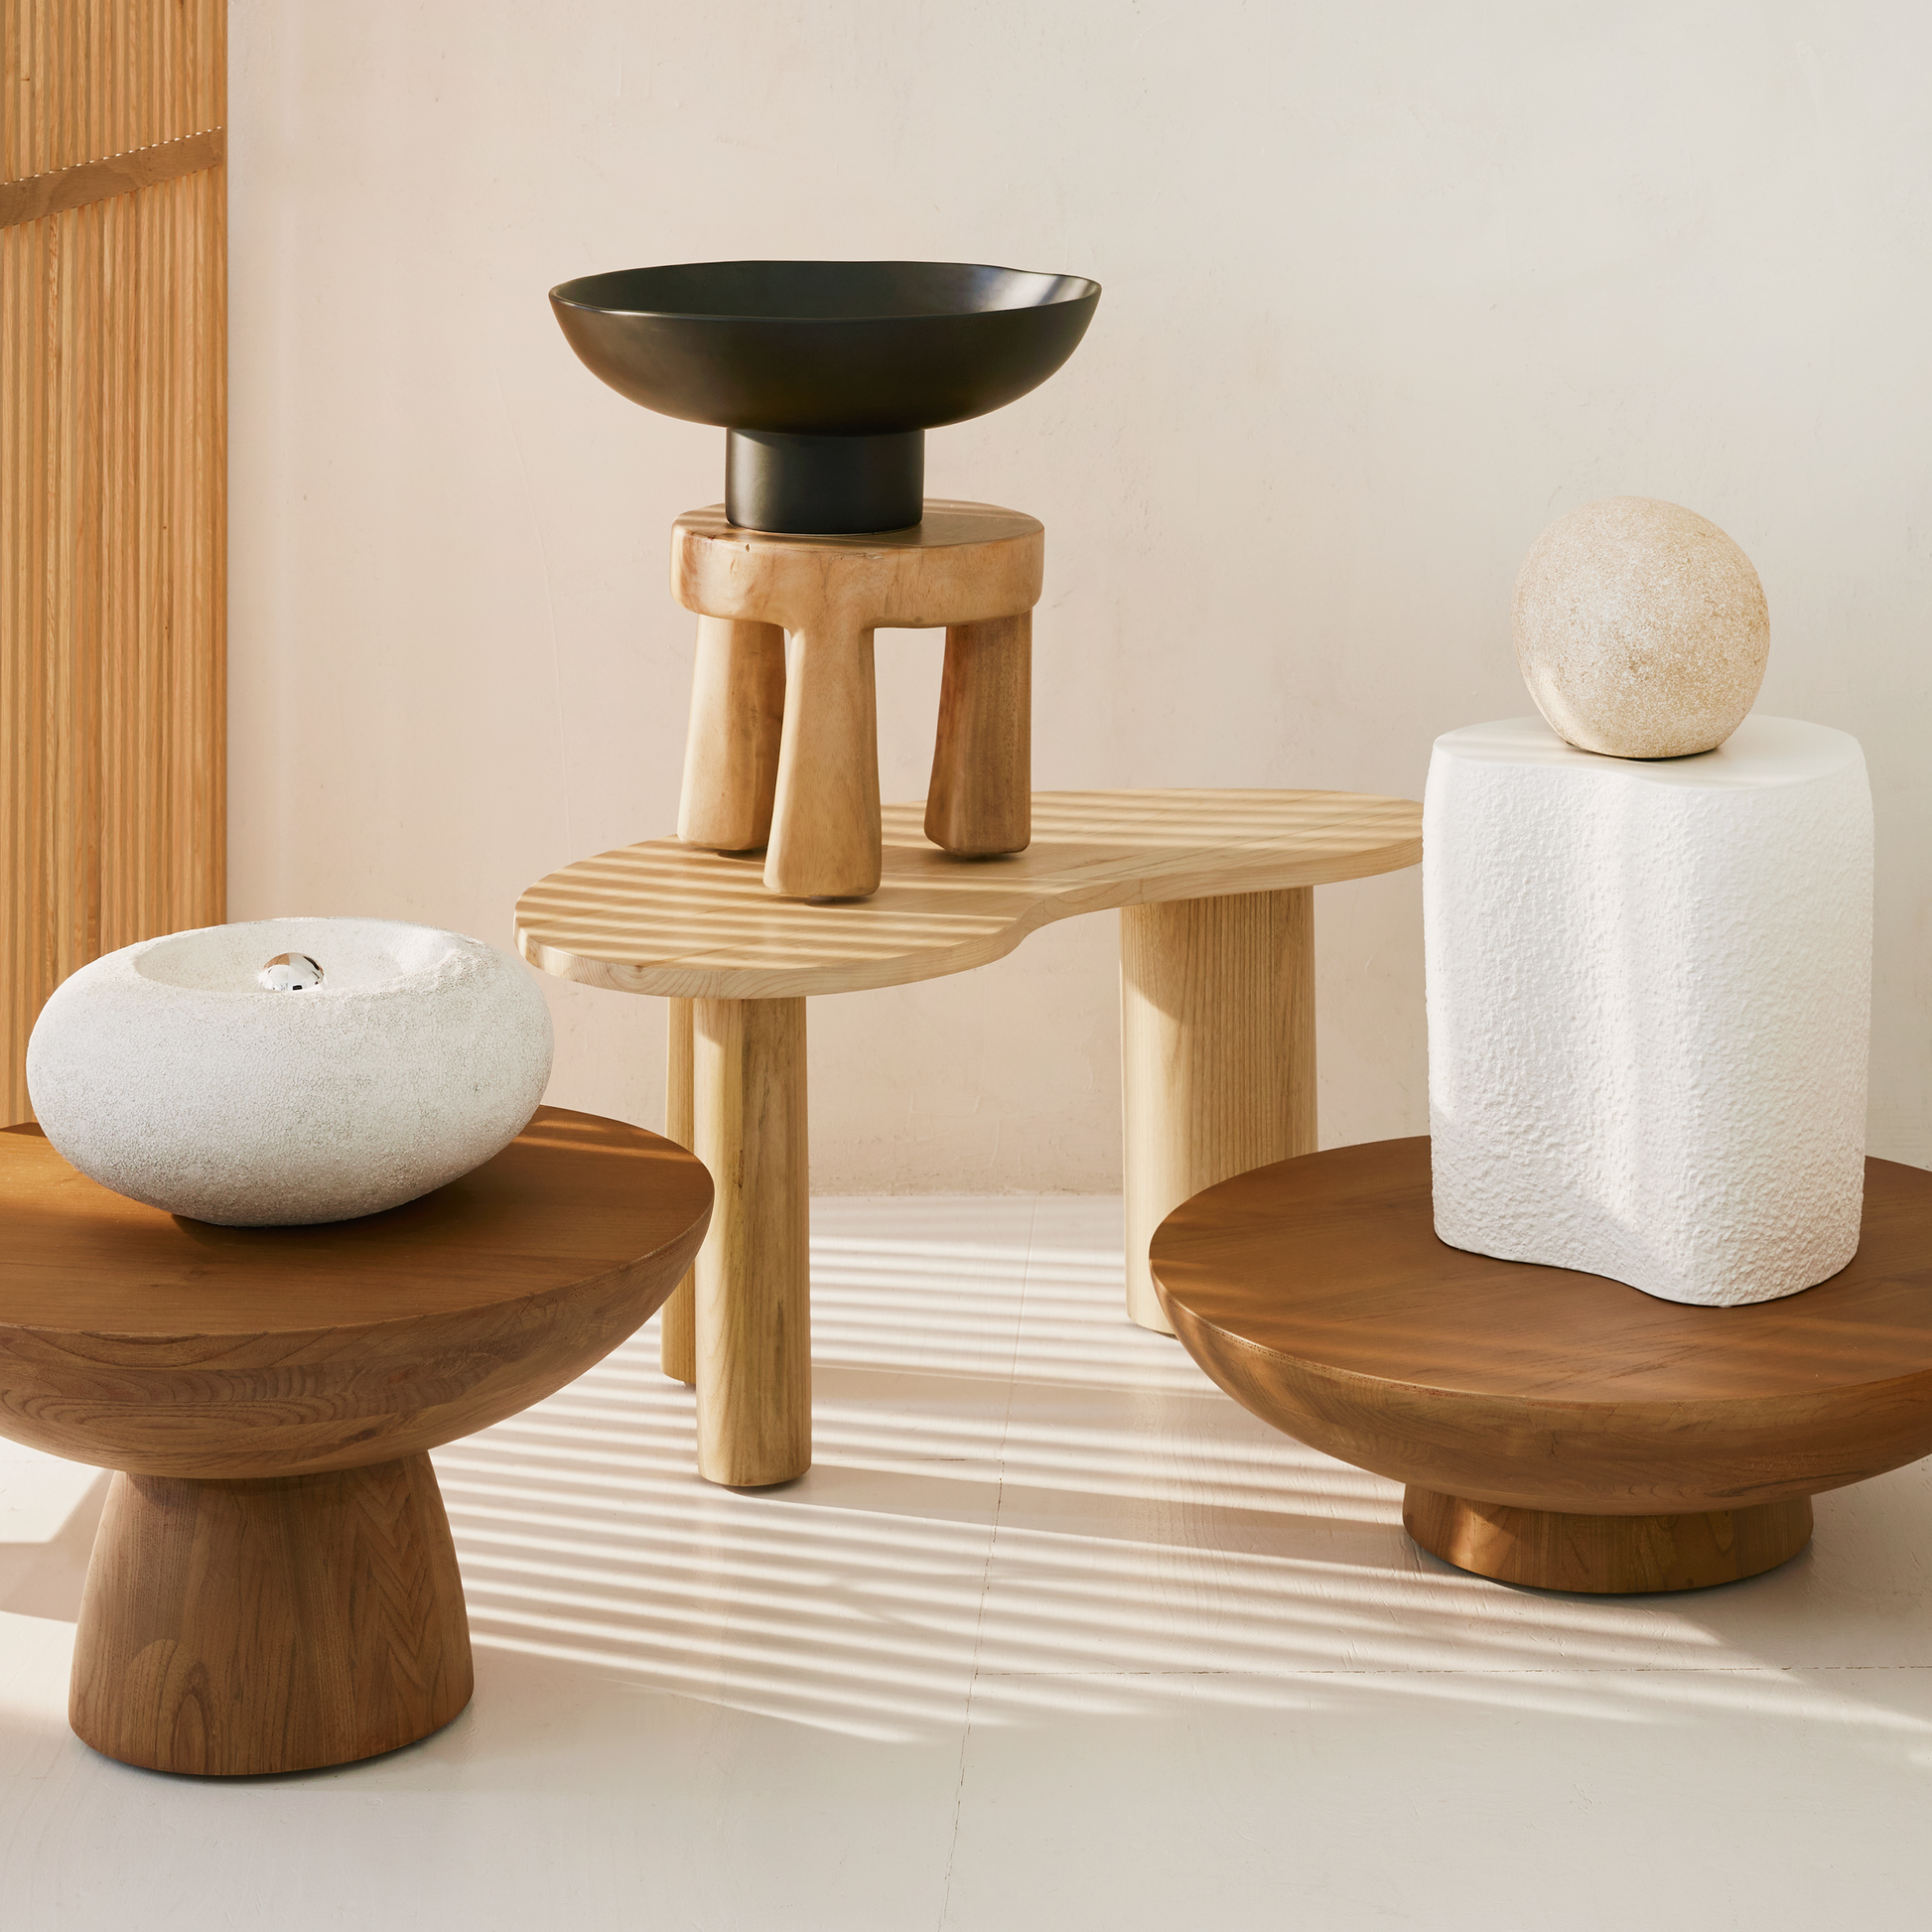 Coffee table ronde en bois de sunkai fait-main - maison bloom concept